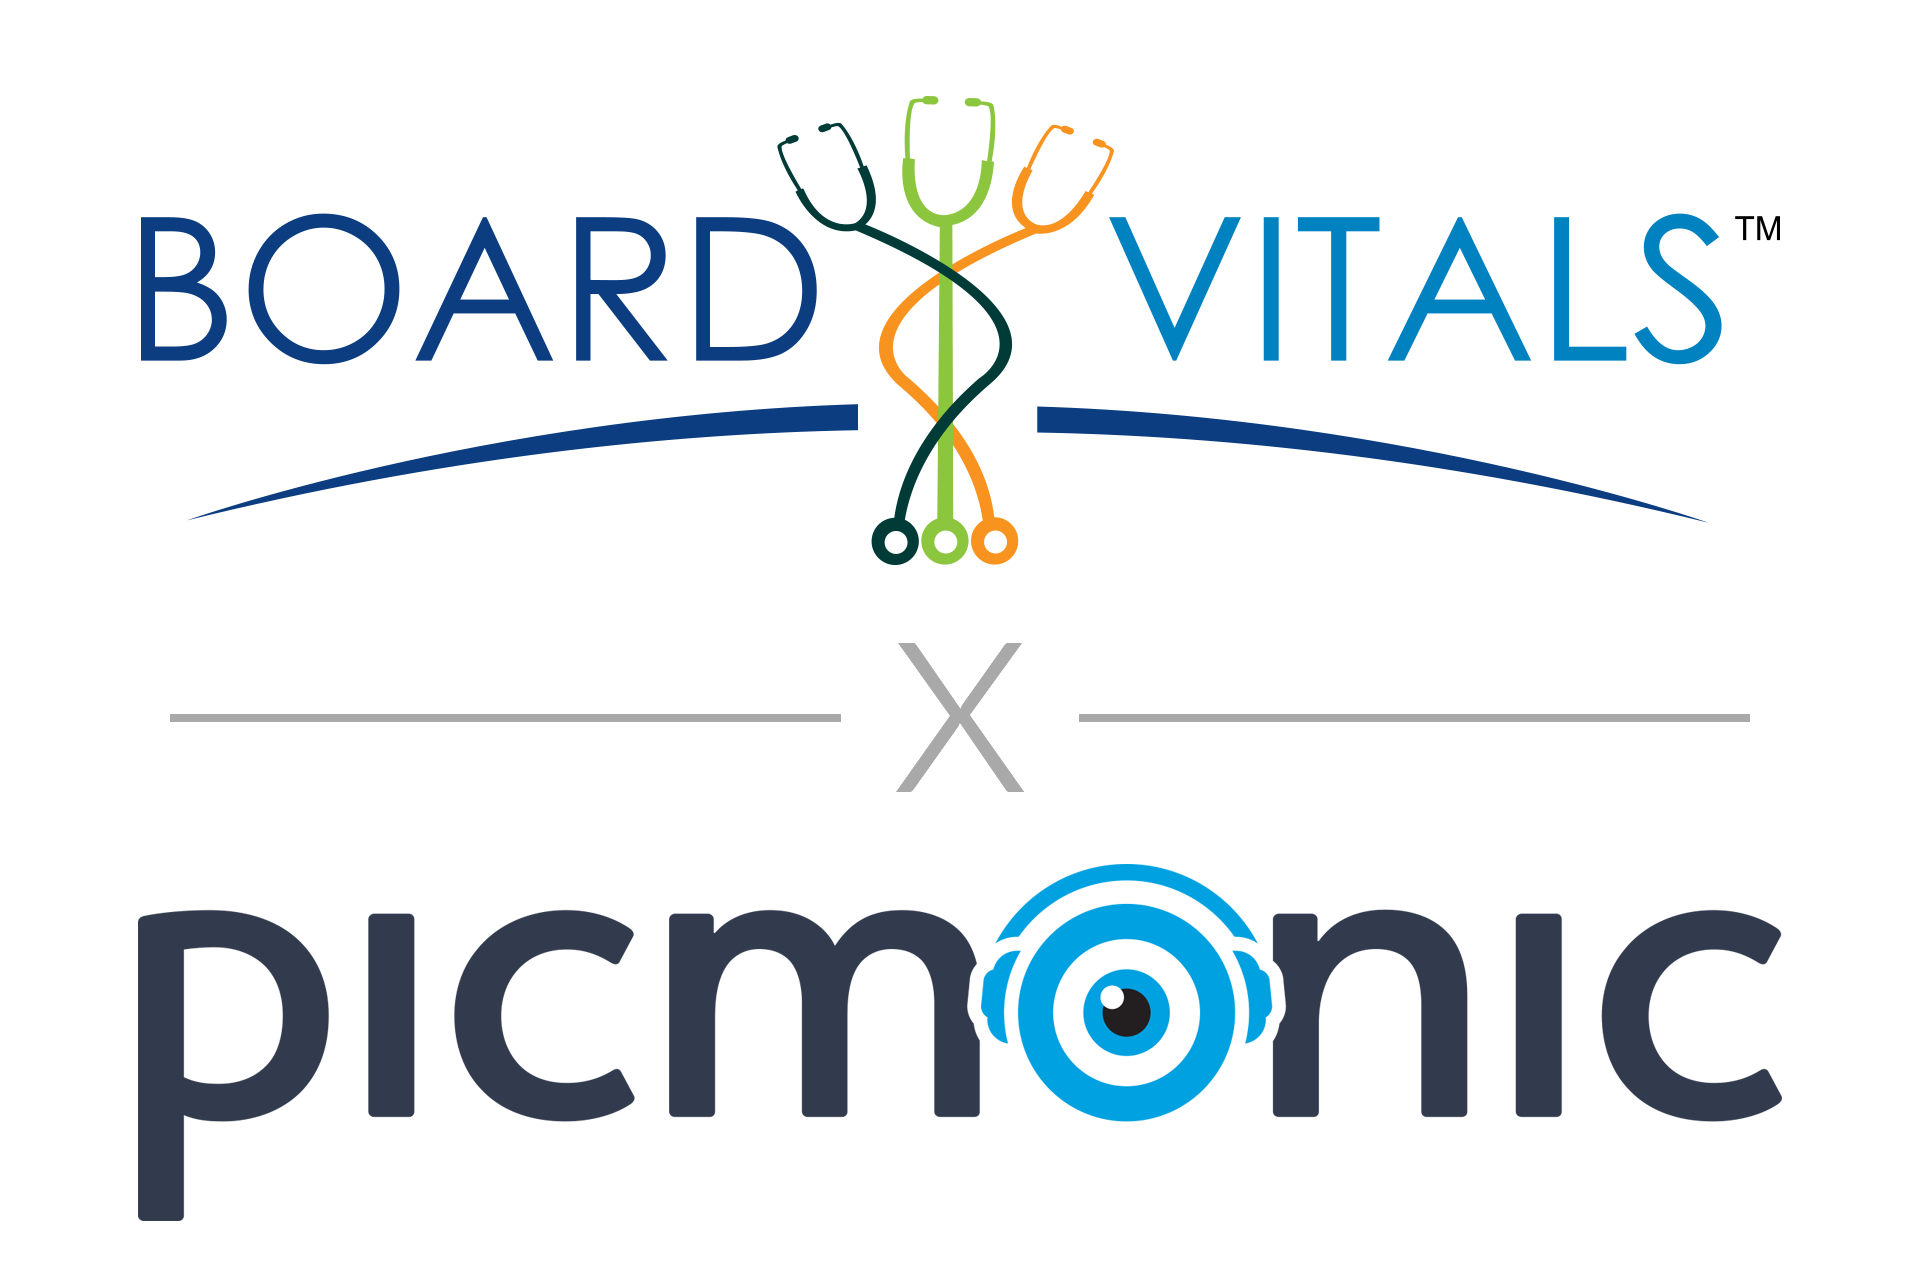 Picmonic and BoardVitals